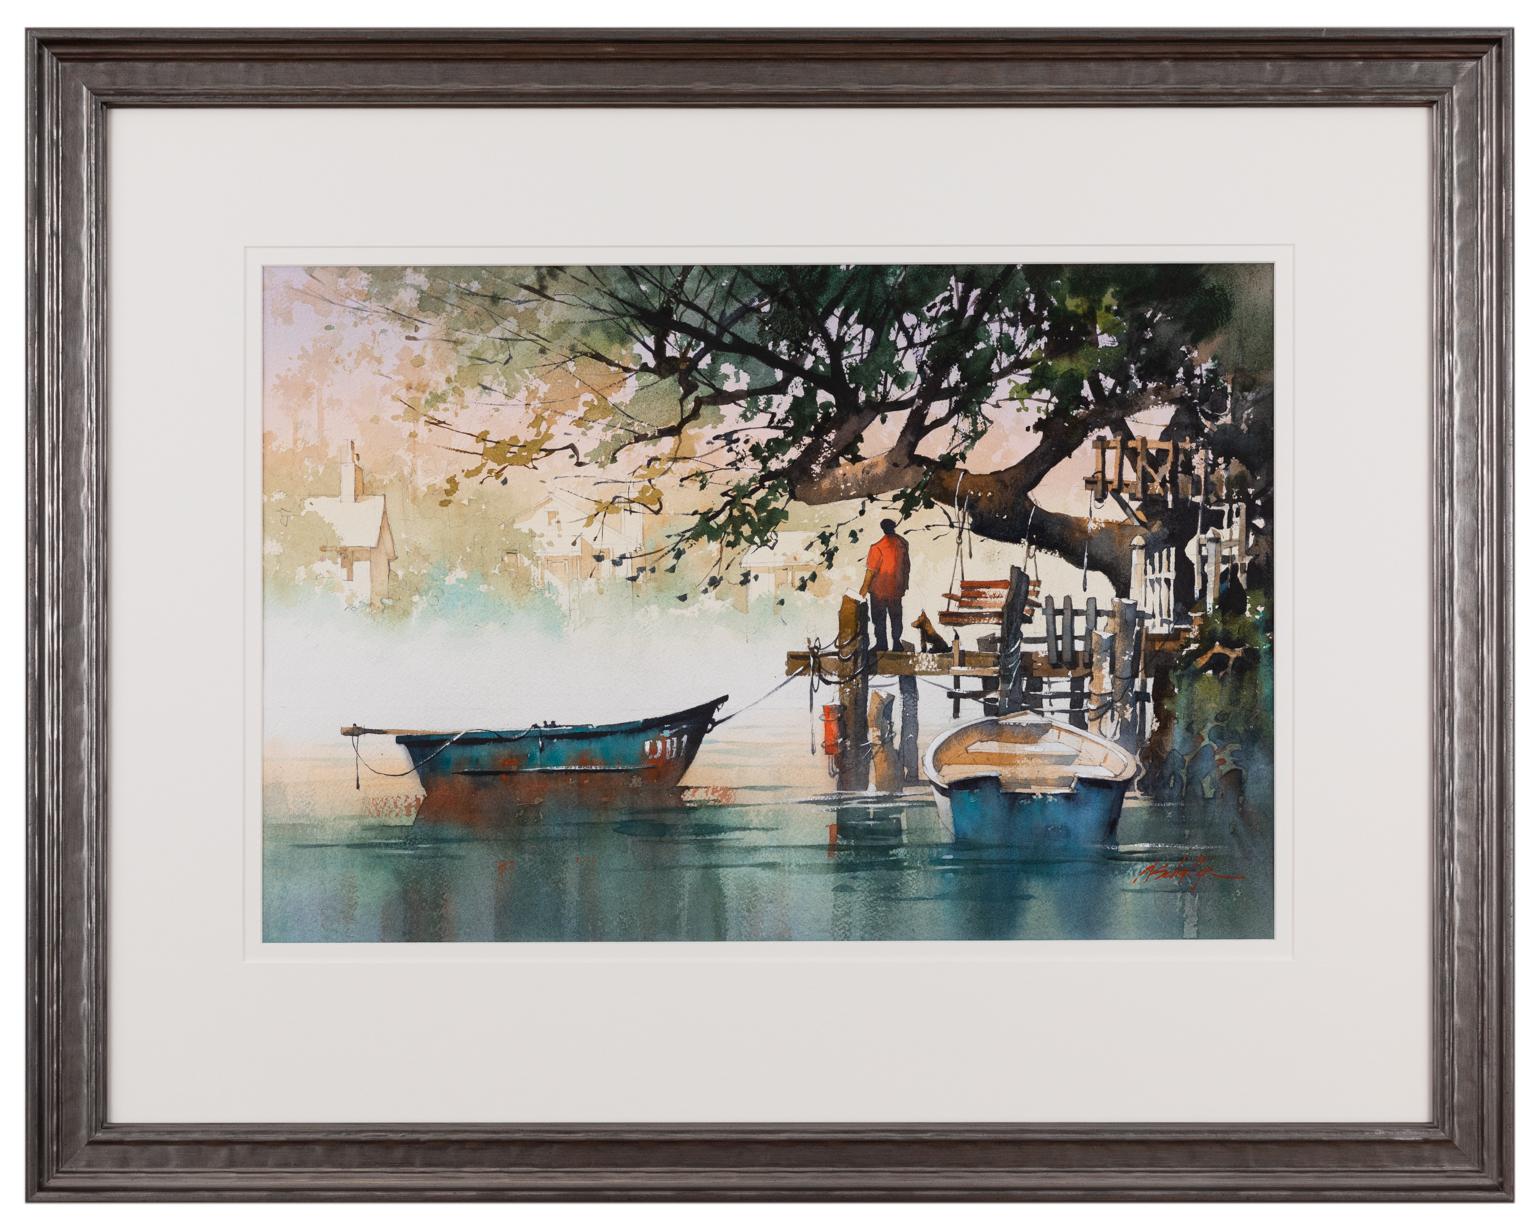 Am Ende des Tages – Aquarell von Booten in Wasser mit Dock  (Schwarz), Landscape Art, von Thomas W. Schaller